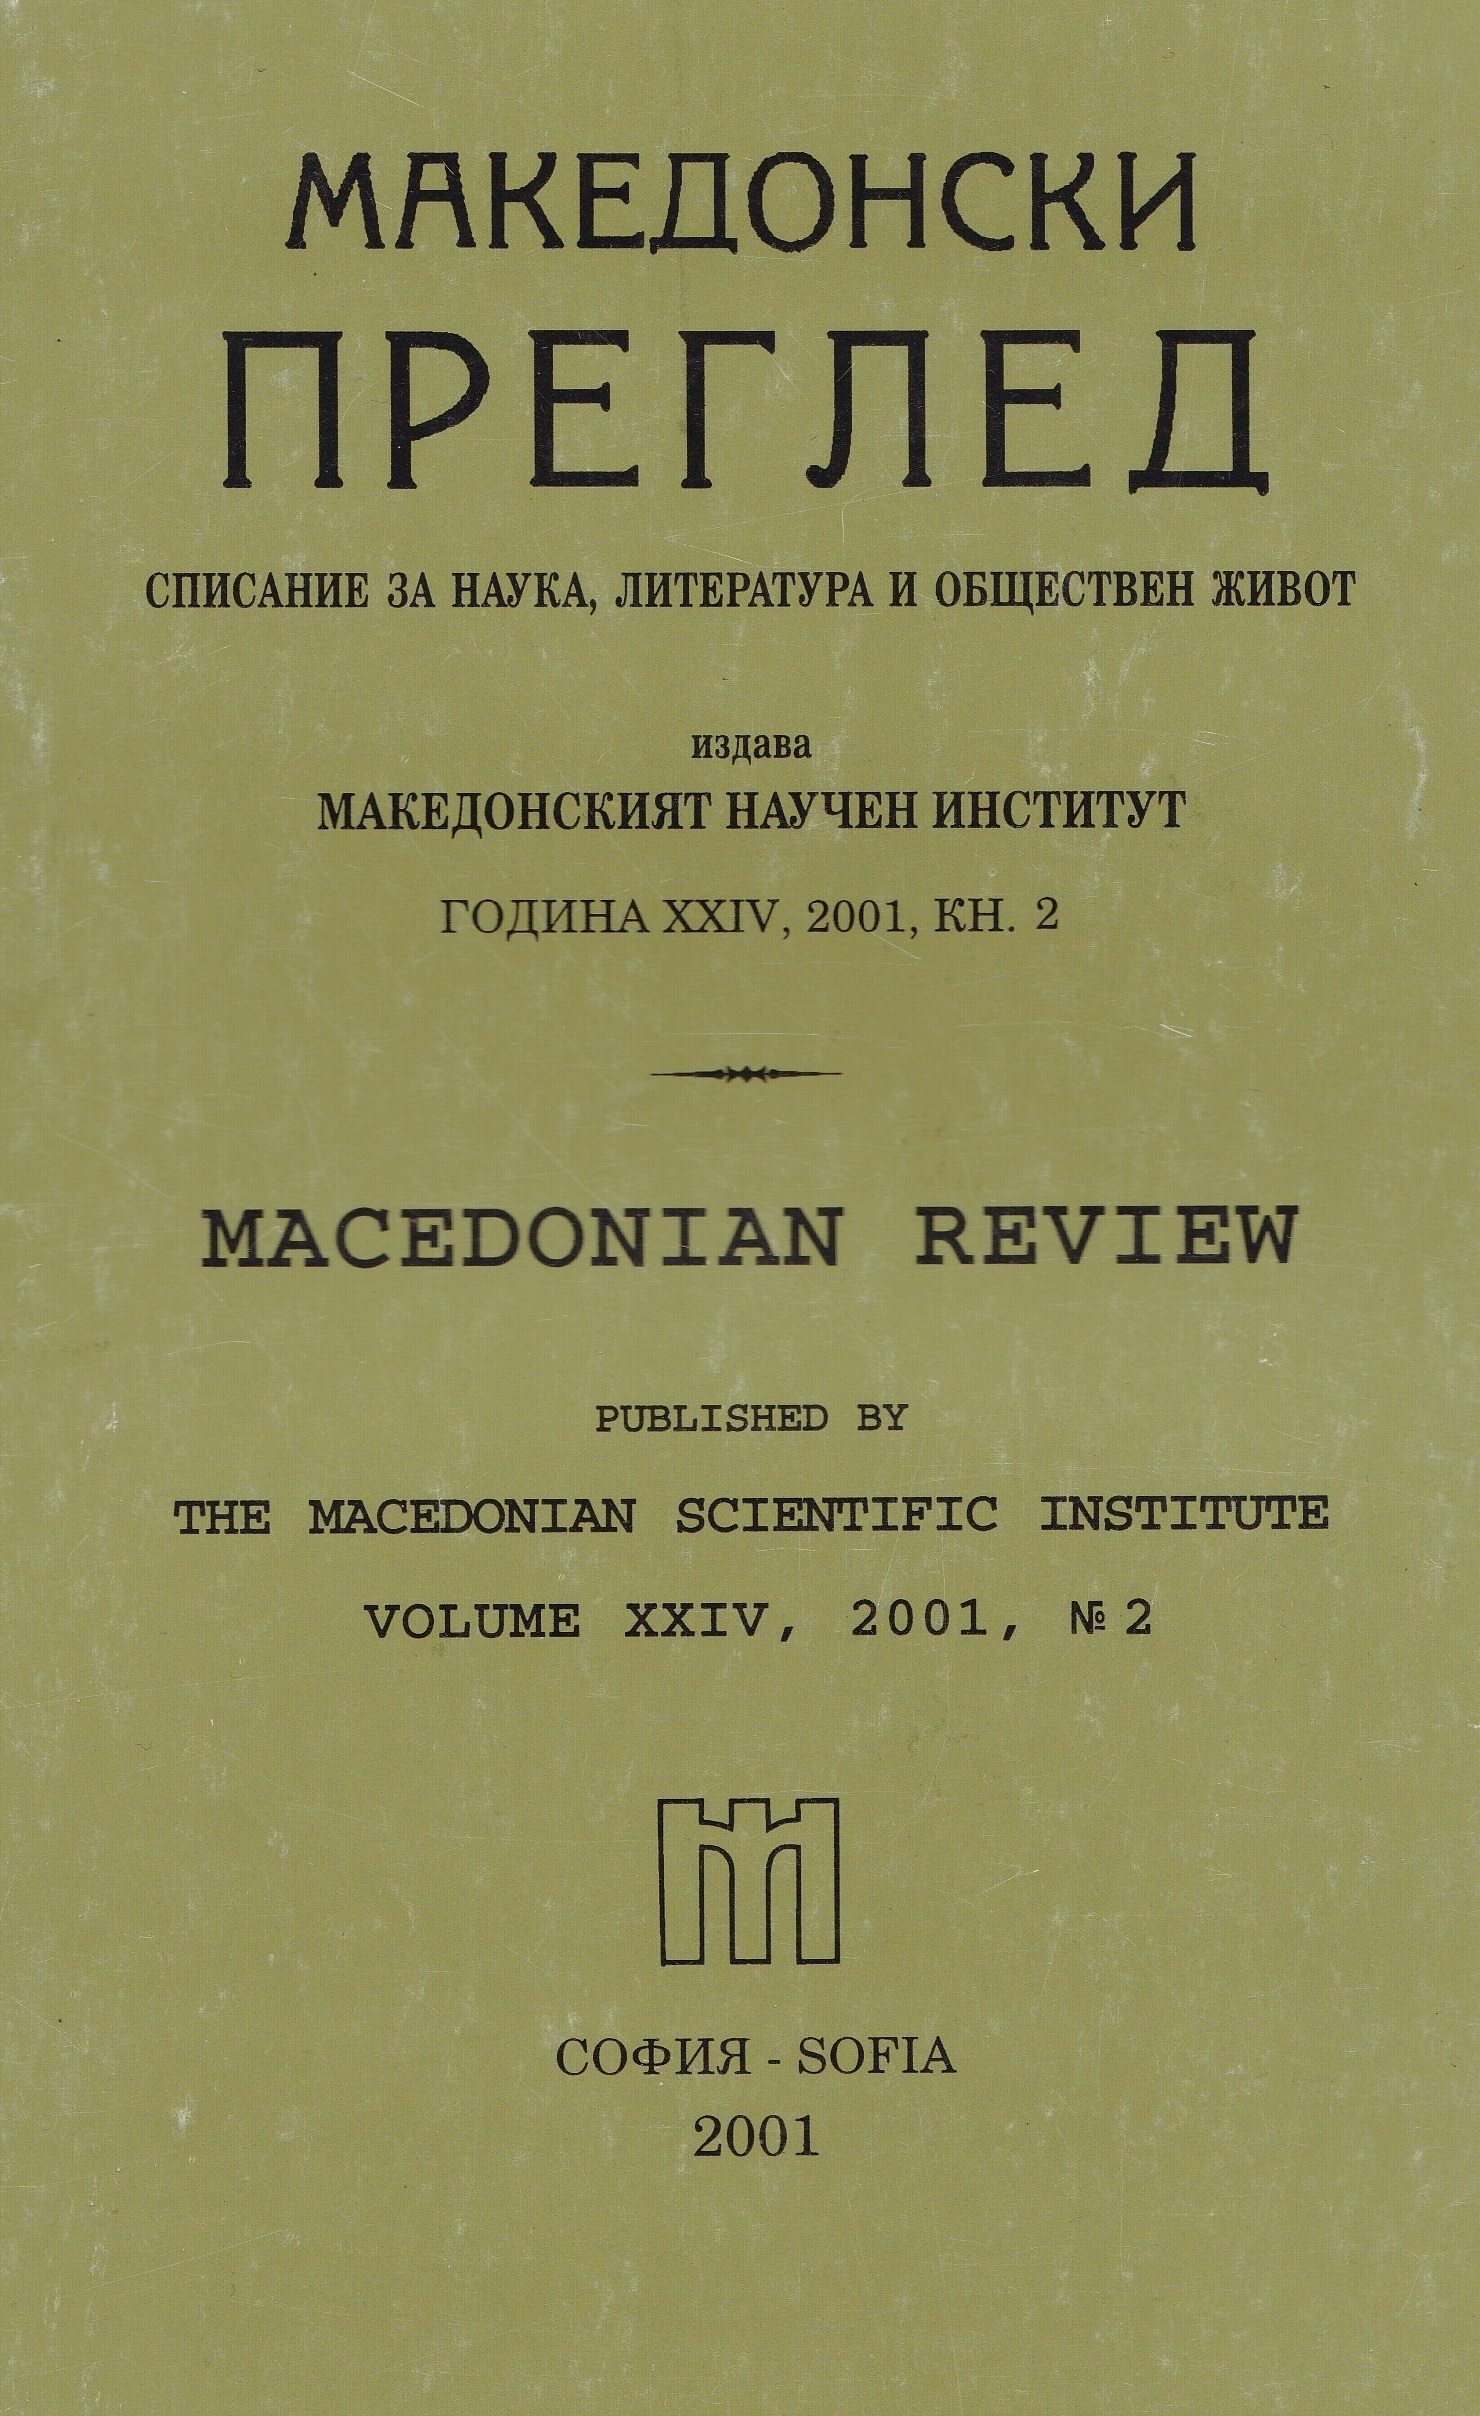 Македонският въпрос в българо-югославските политически отношения (1903-1967)